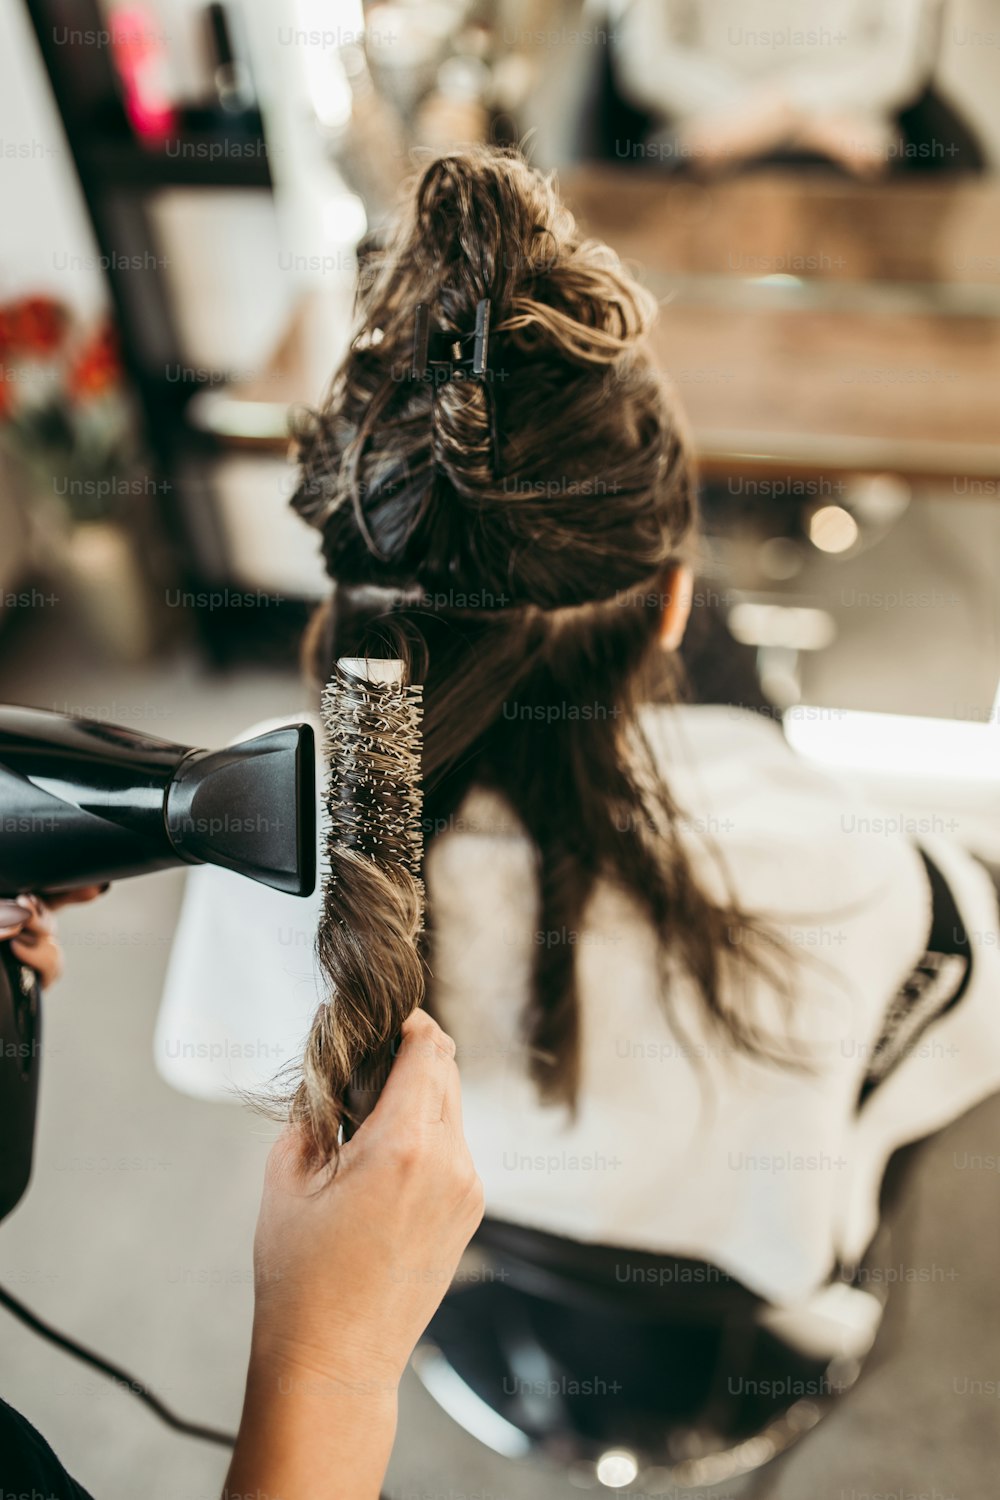 미용실에서 긴 머리를 가진 아름다운 갈색 머리 여자가 머리카락을 날리고 있다. 미용실 스타일링 개념. 사진 – Unsplash의 머리  이미지